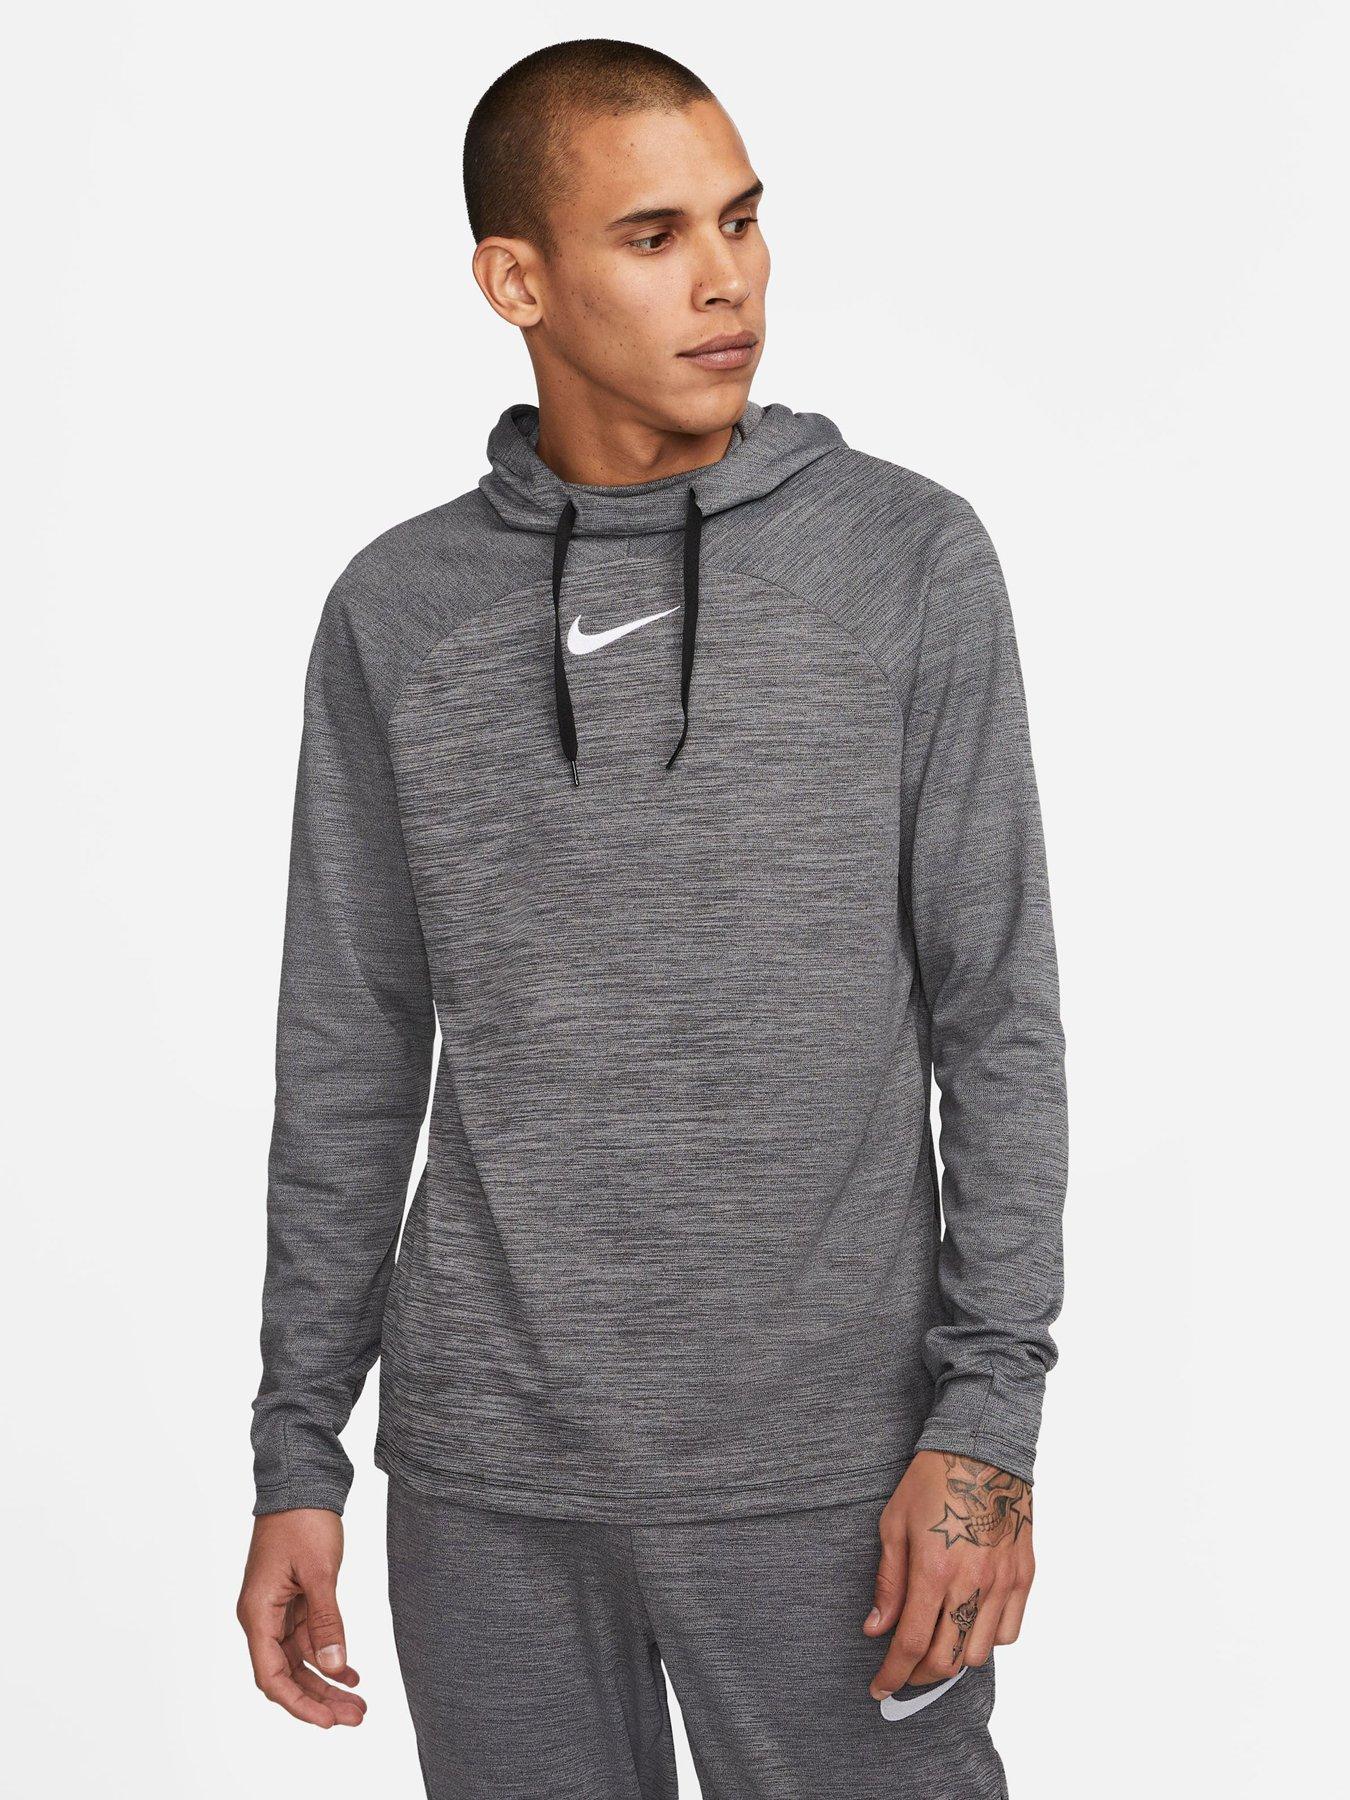 Nike Hoodies, Sweatshirts & Jumpers | Very.co.uk